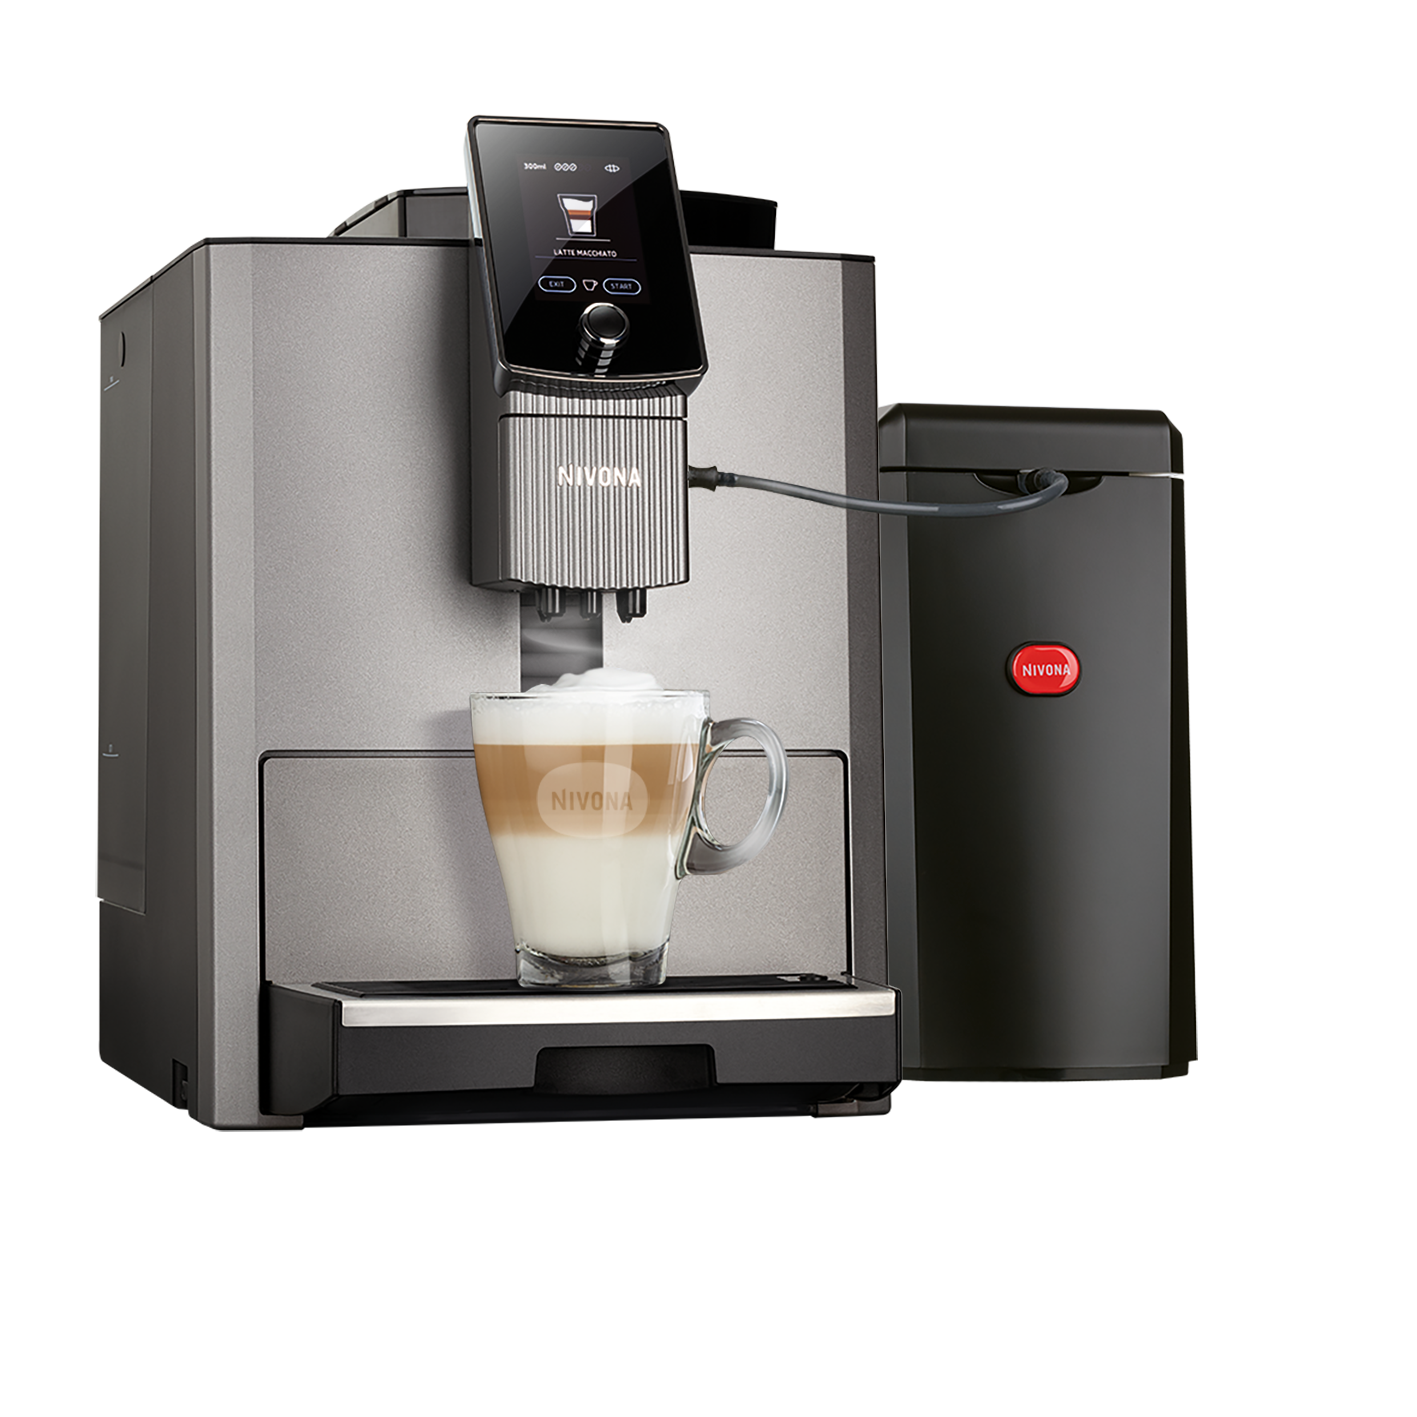 NIVONA NICR 930 - Titan / Chrom - Salina Kaffee